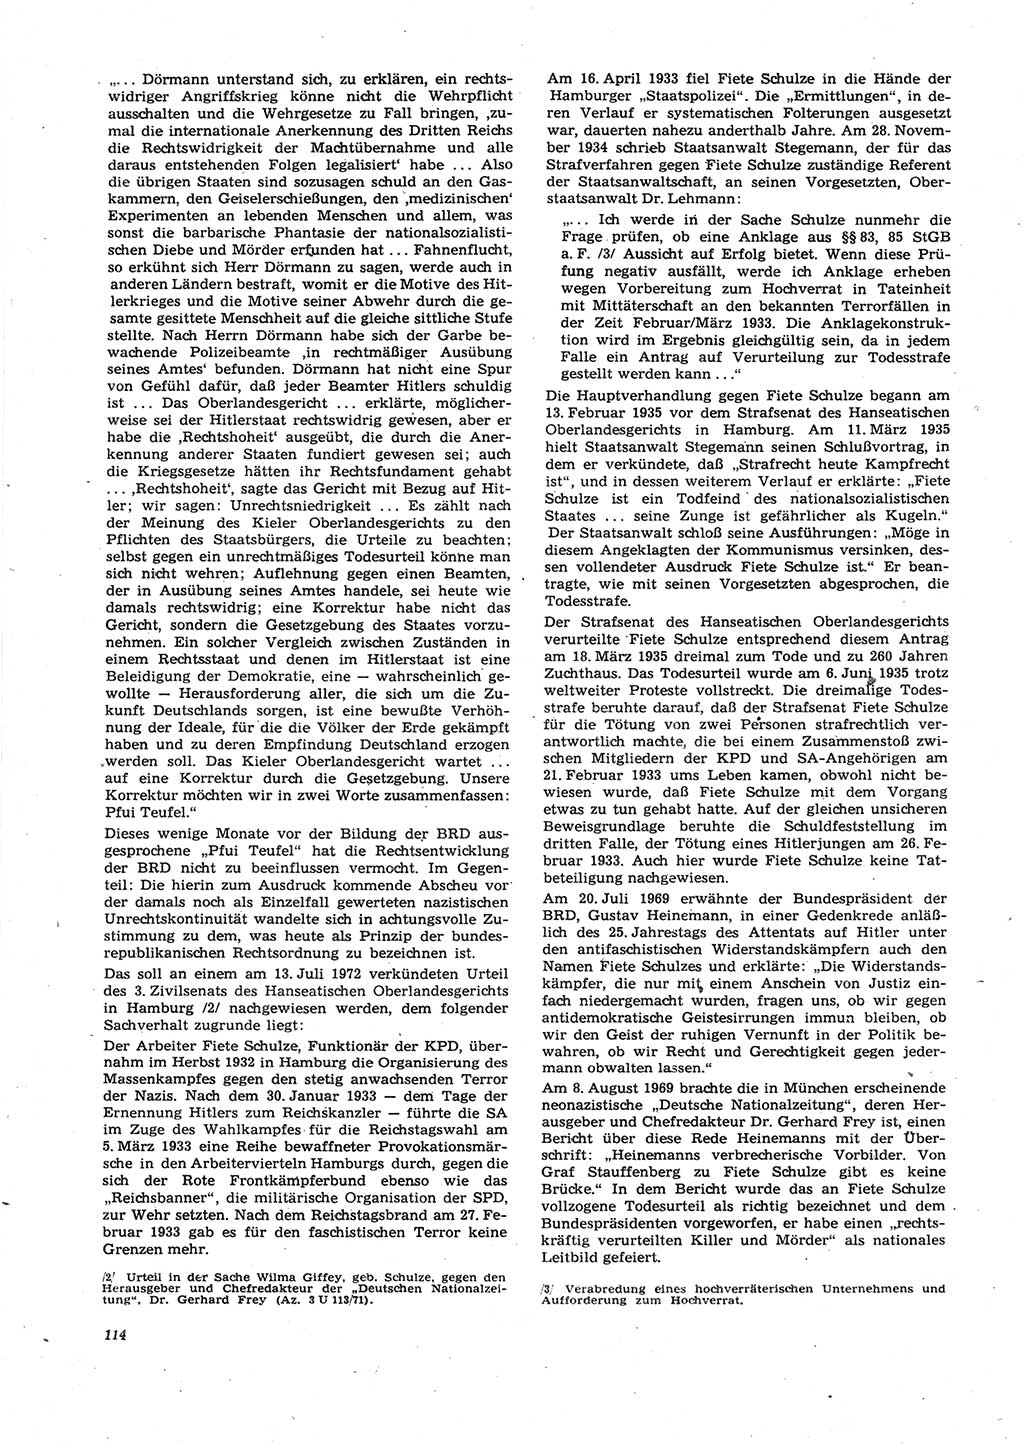 Neue Justiz (NJ), Zeitschrift für Recht und Rechtswissenschaft [Deutsche Demokratische Republik (DDR)], 27. Jahrgang 1973, Seite 114 (NJ DDR 1973, S. 114)